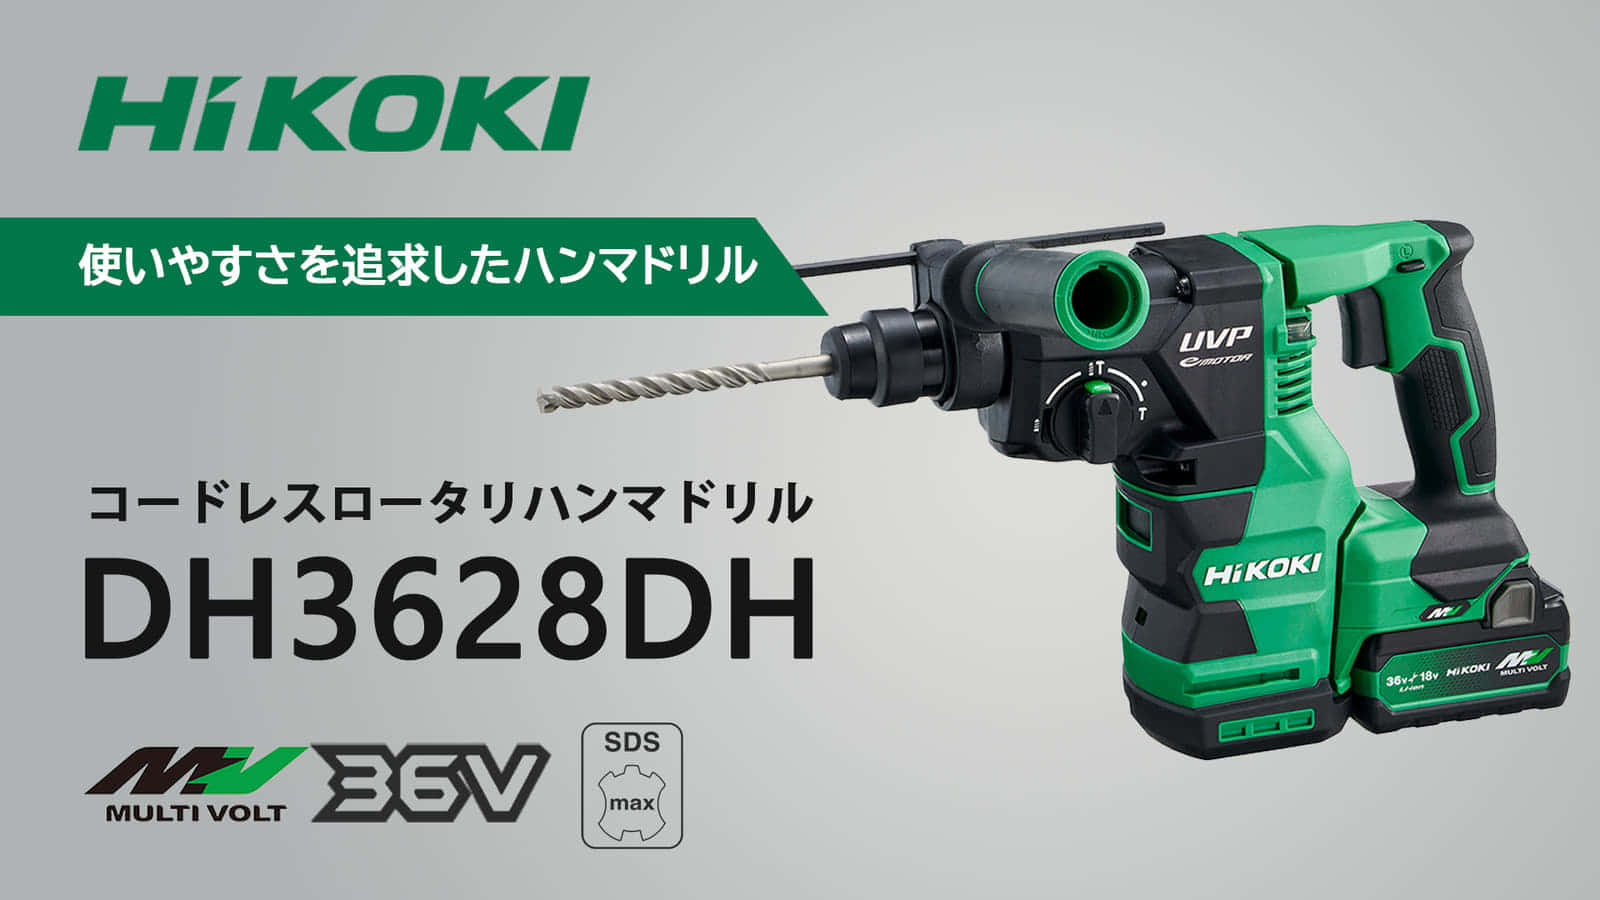 HiKOKI DH3628DA コードレスロータリーハンマドリルを発売、LED垂直サポートを搭載